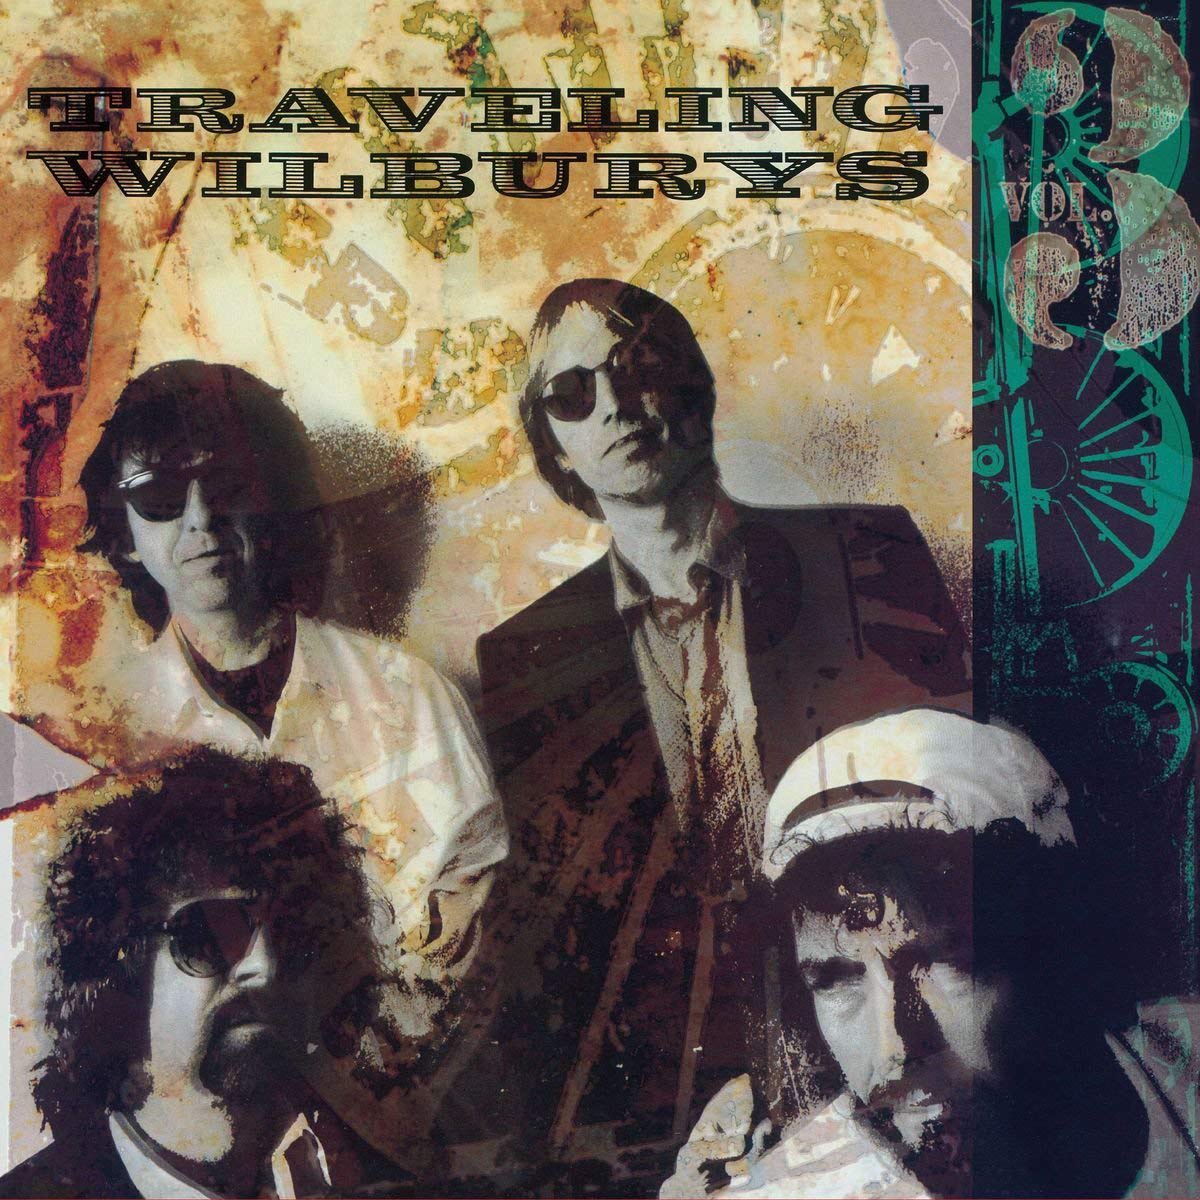 Traveling Wilburys - Vol 3